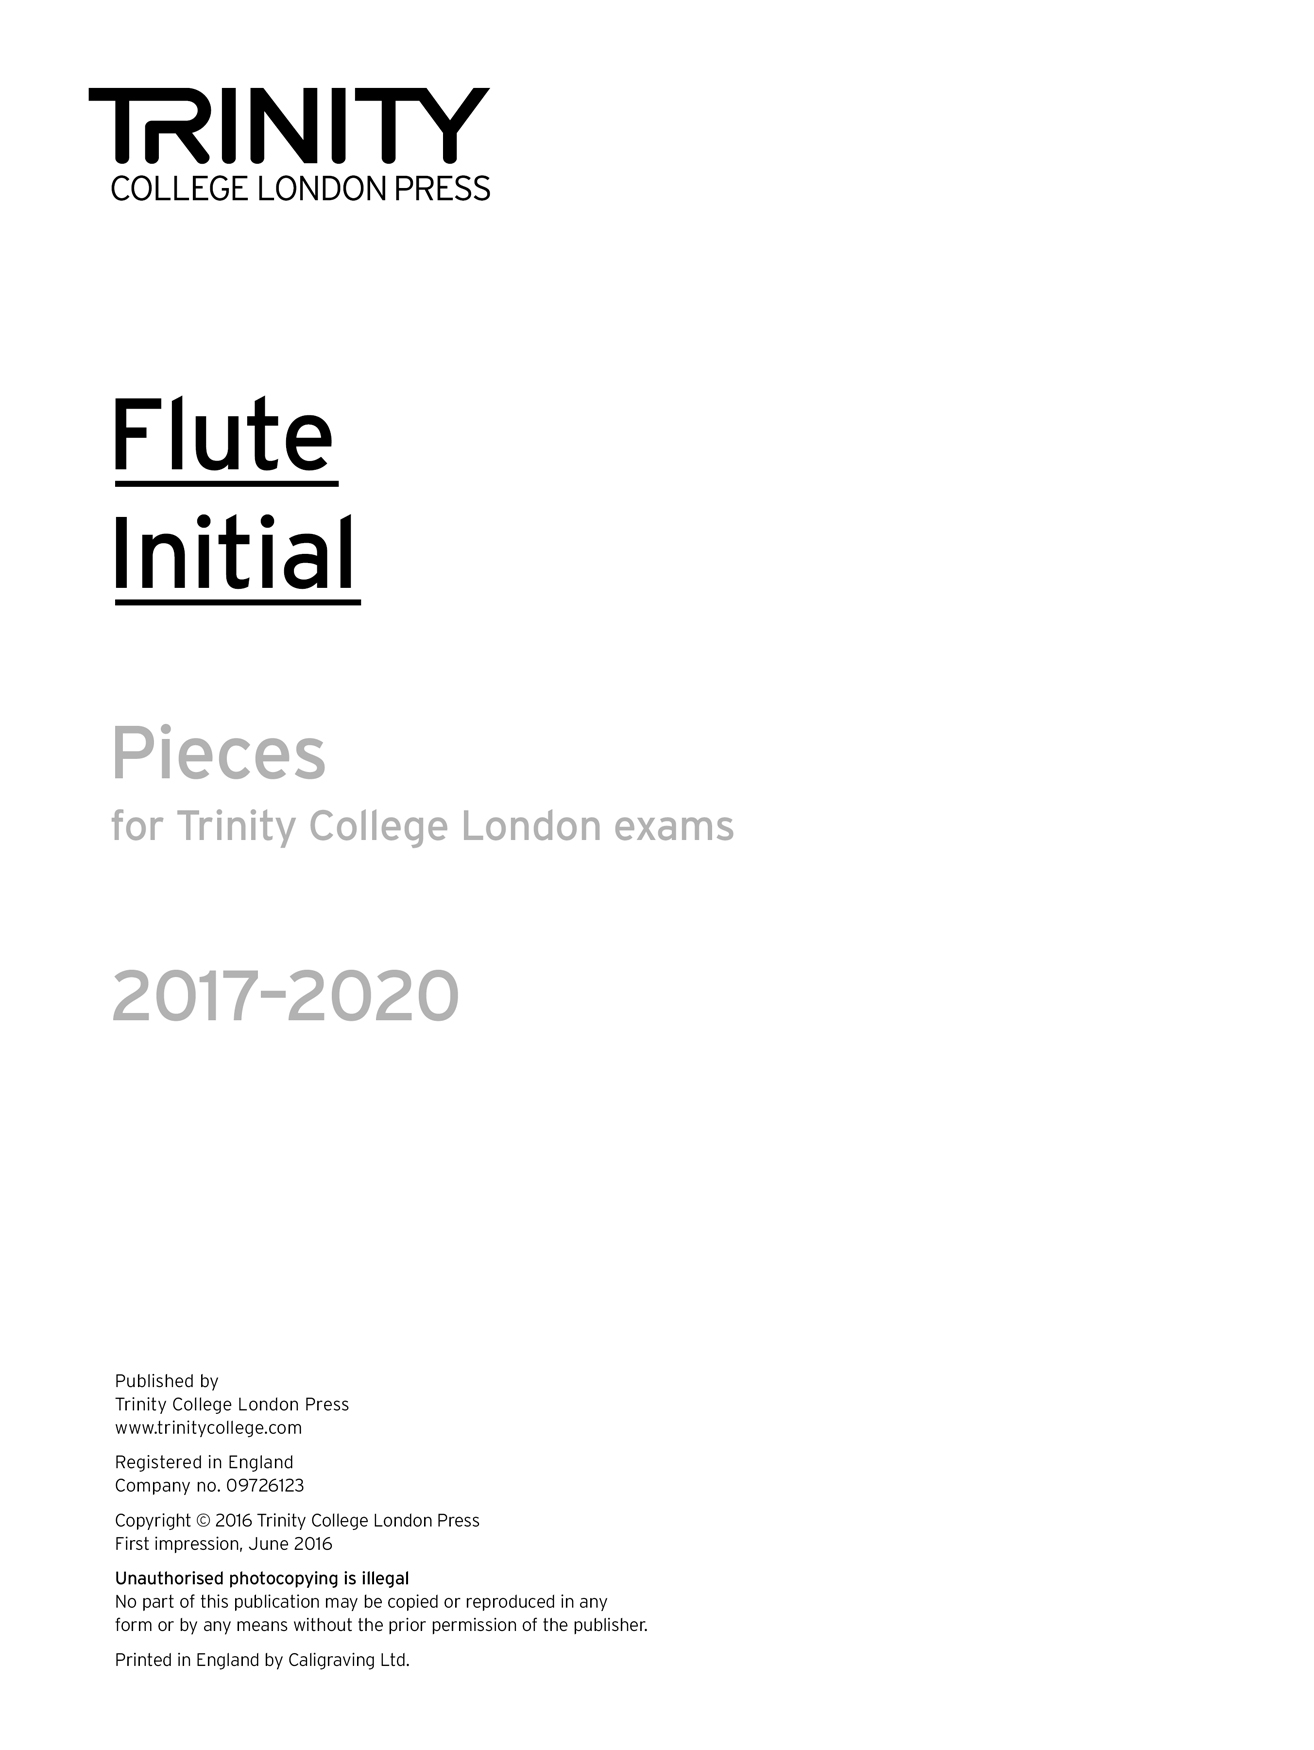 Flute Exam 2017-2020 - Initial: Flute: Part